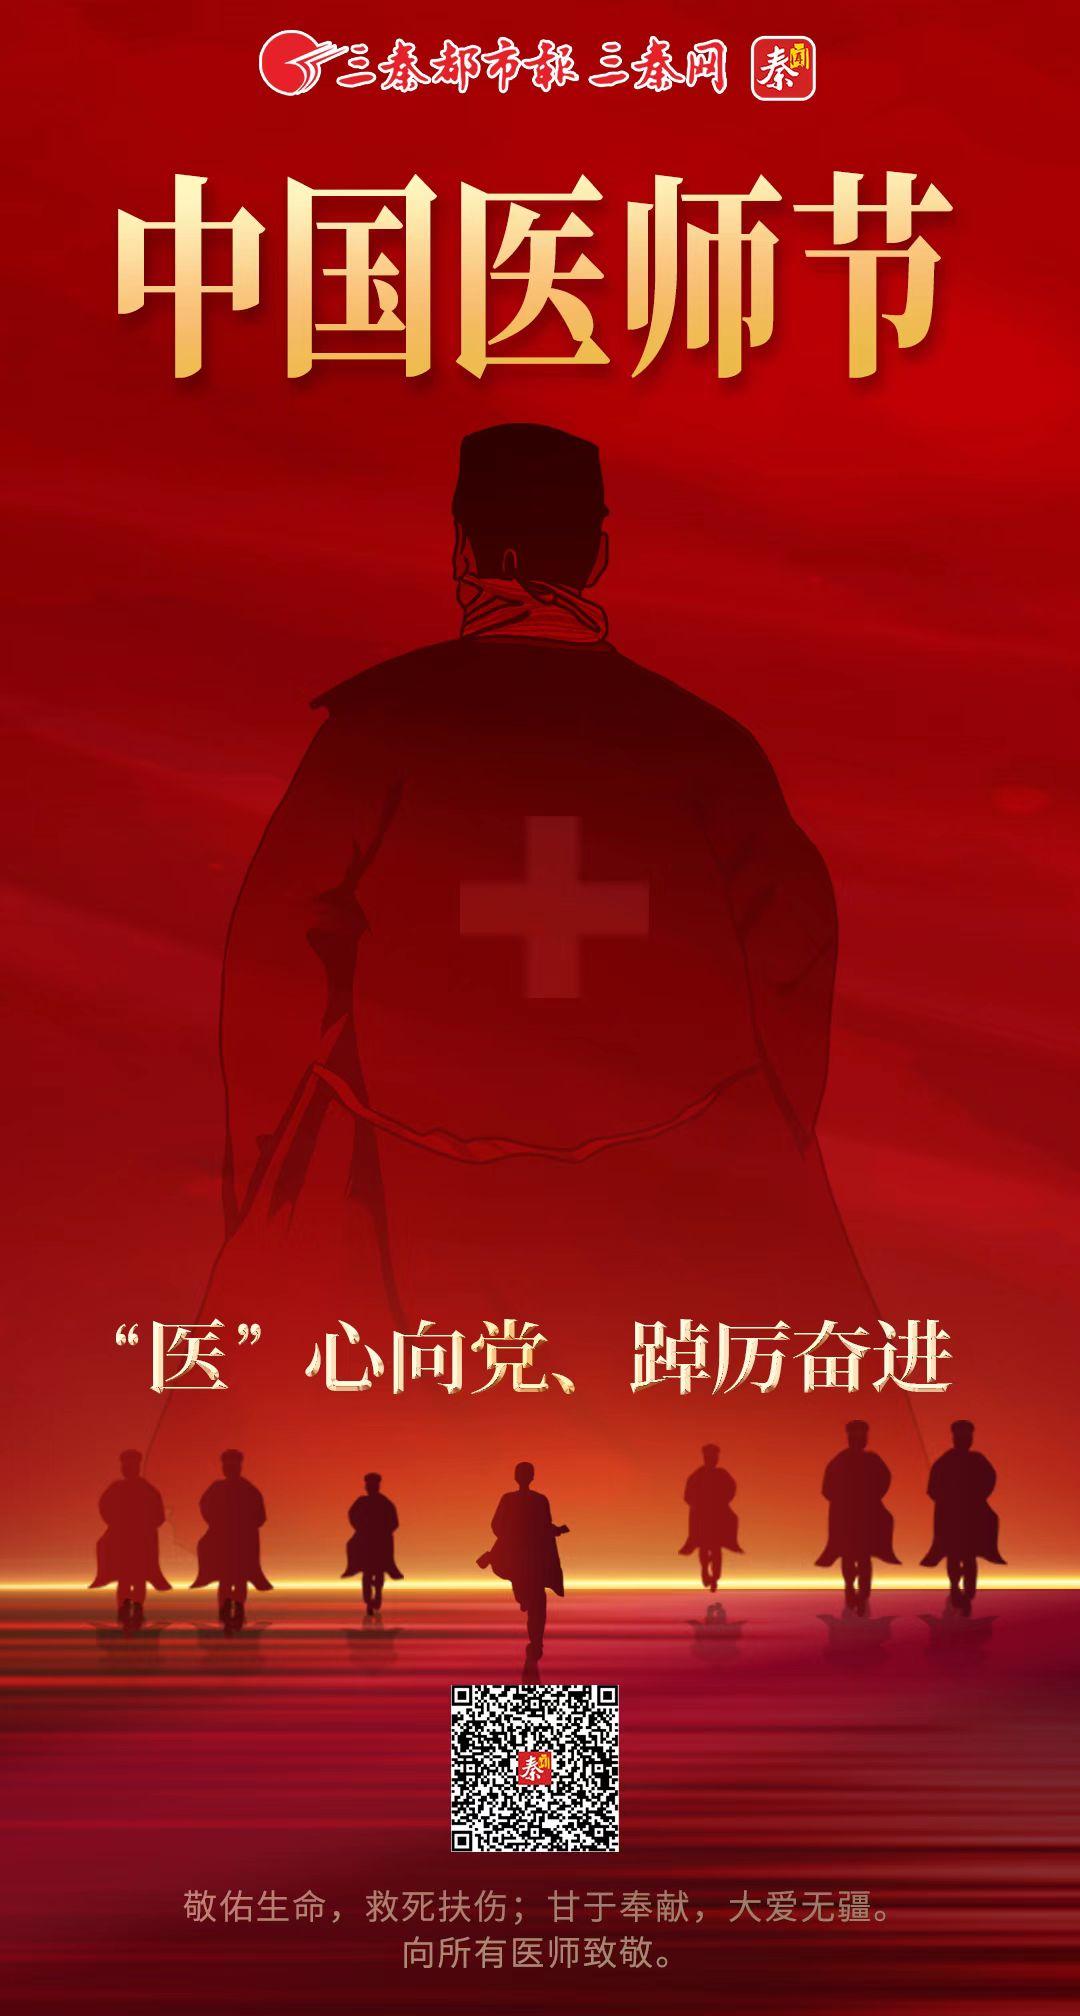 中国医师节丨敬佑生命，救死扶伤；甘于奉献，大爱无疆。向所有医师致敬。